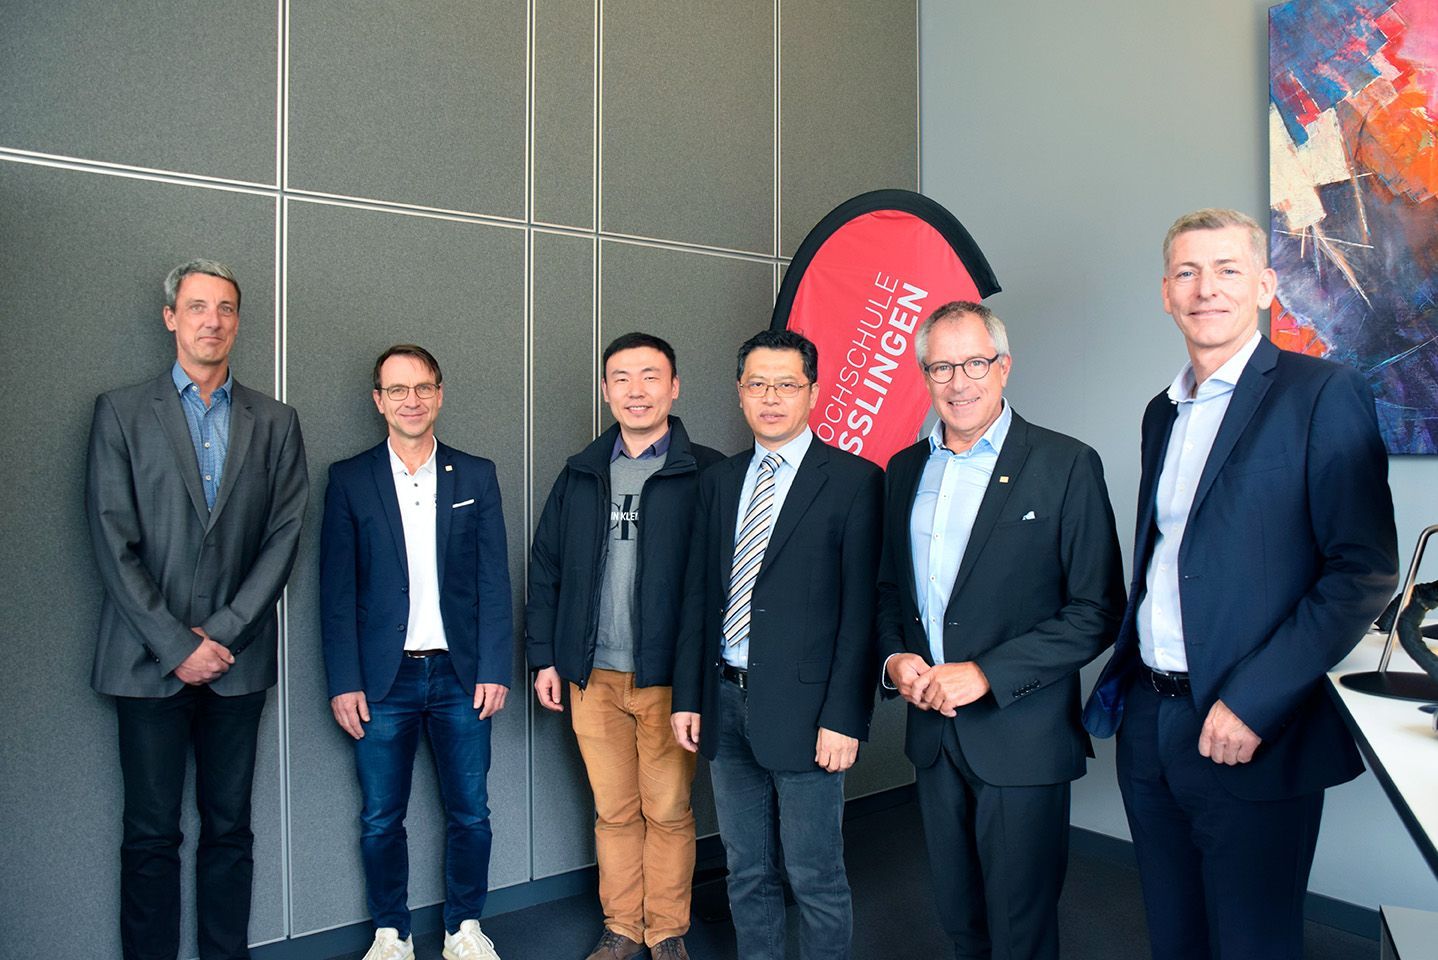 Chinesische Delegation und Gastgeber an der Hochschule Esslingen